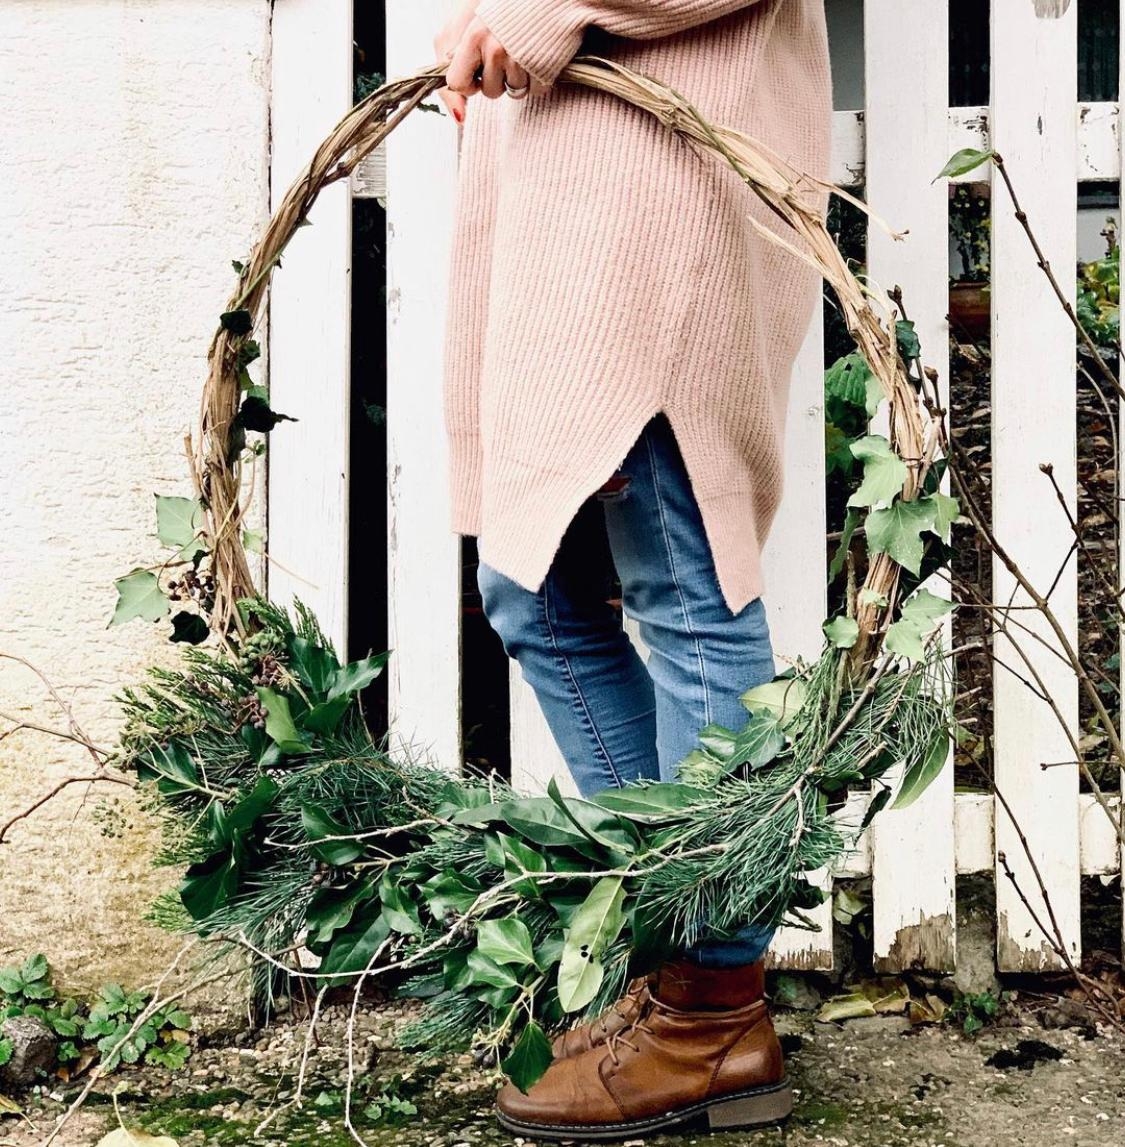 Seid ihr schon in #weihnachtslaune? #winterdeko #diy wreath #kranz #freshflowers #handmade #deko #adventsdeko #couchlieb